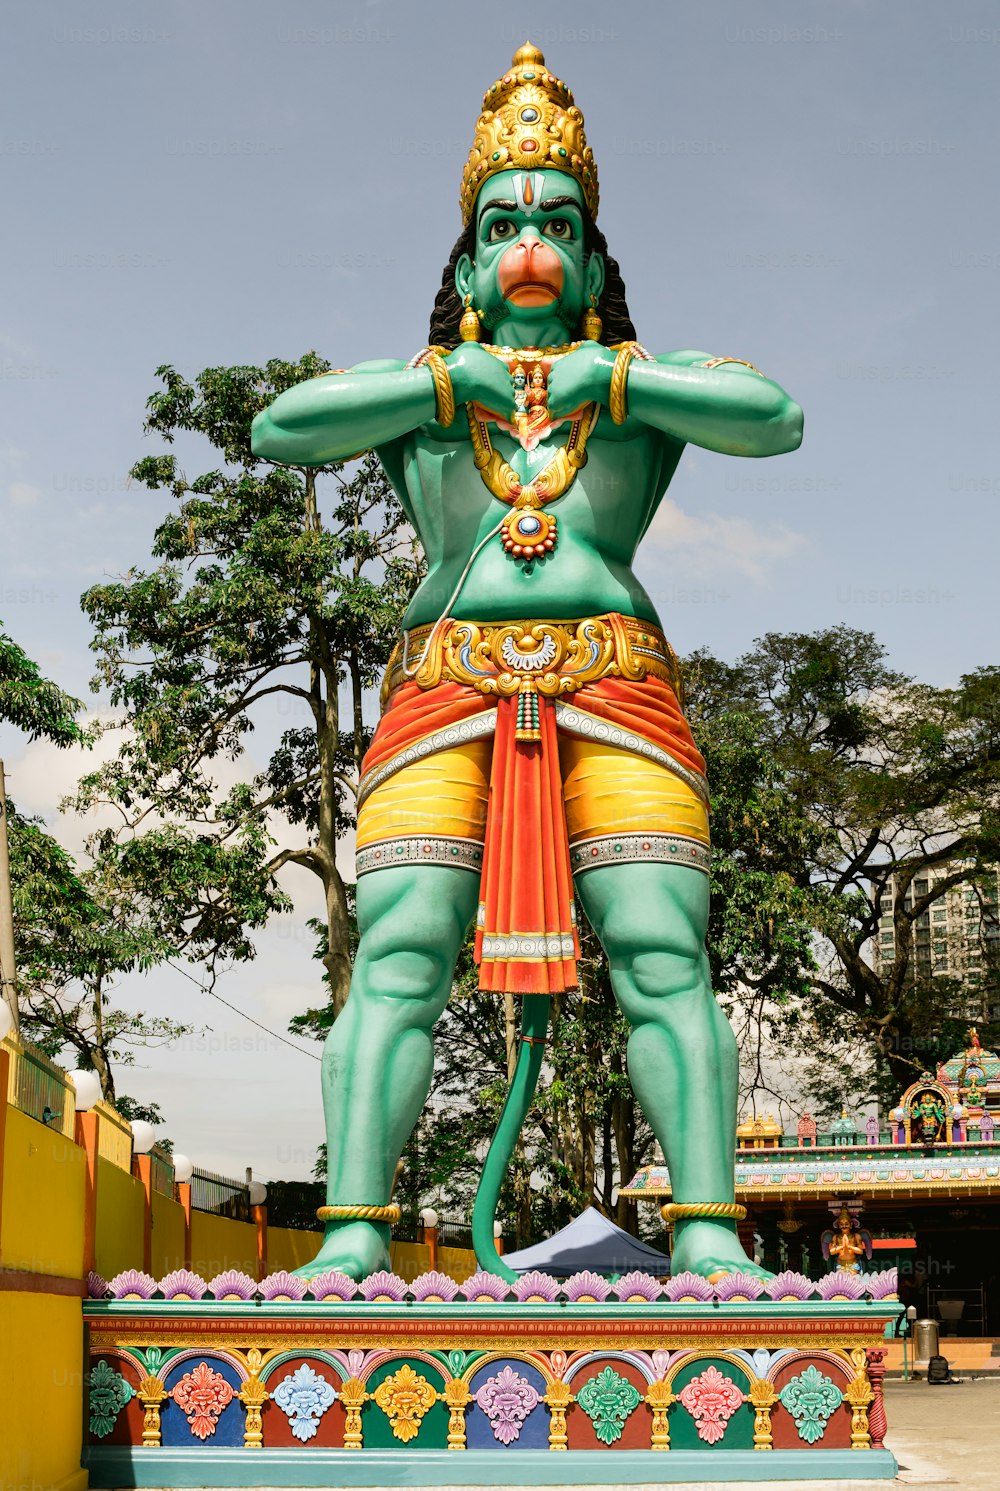 Eine große Statue eines Mannes in einem grünen Outfit